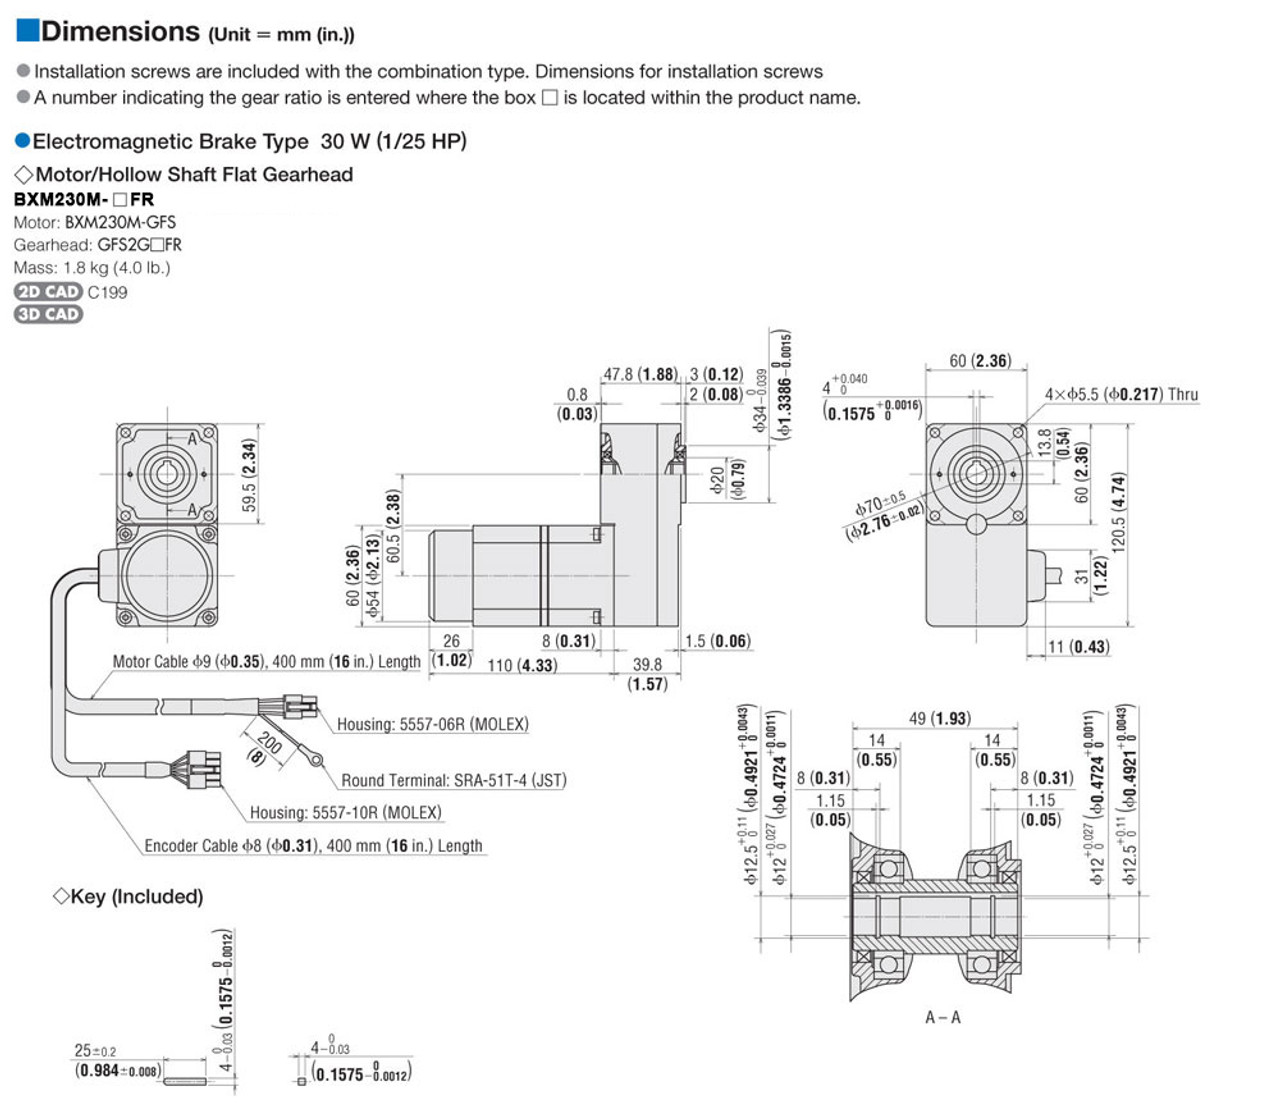 BXM230M-15FR / BXSD30-C2 - Dimensions